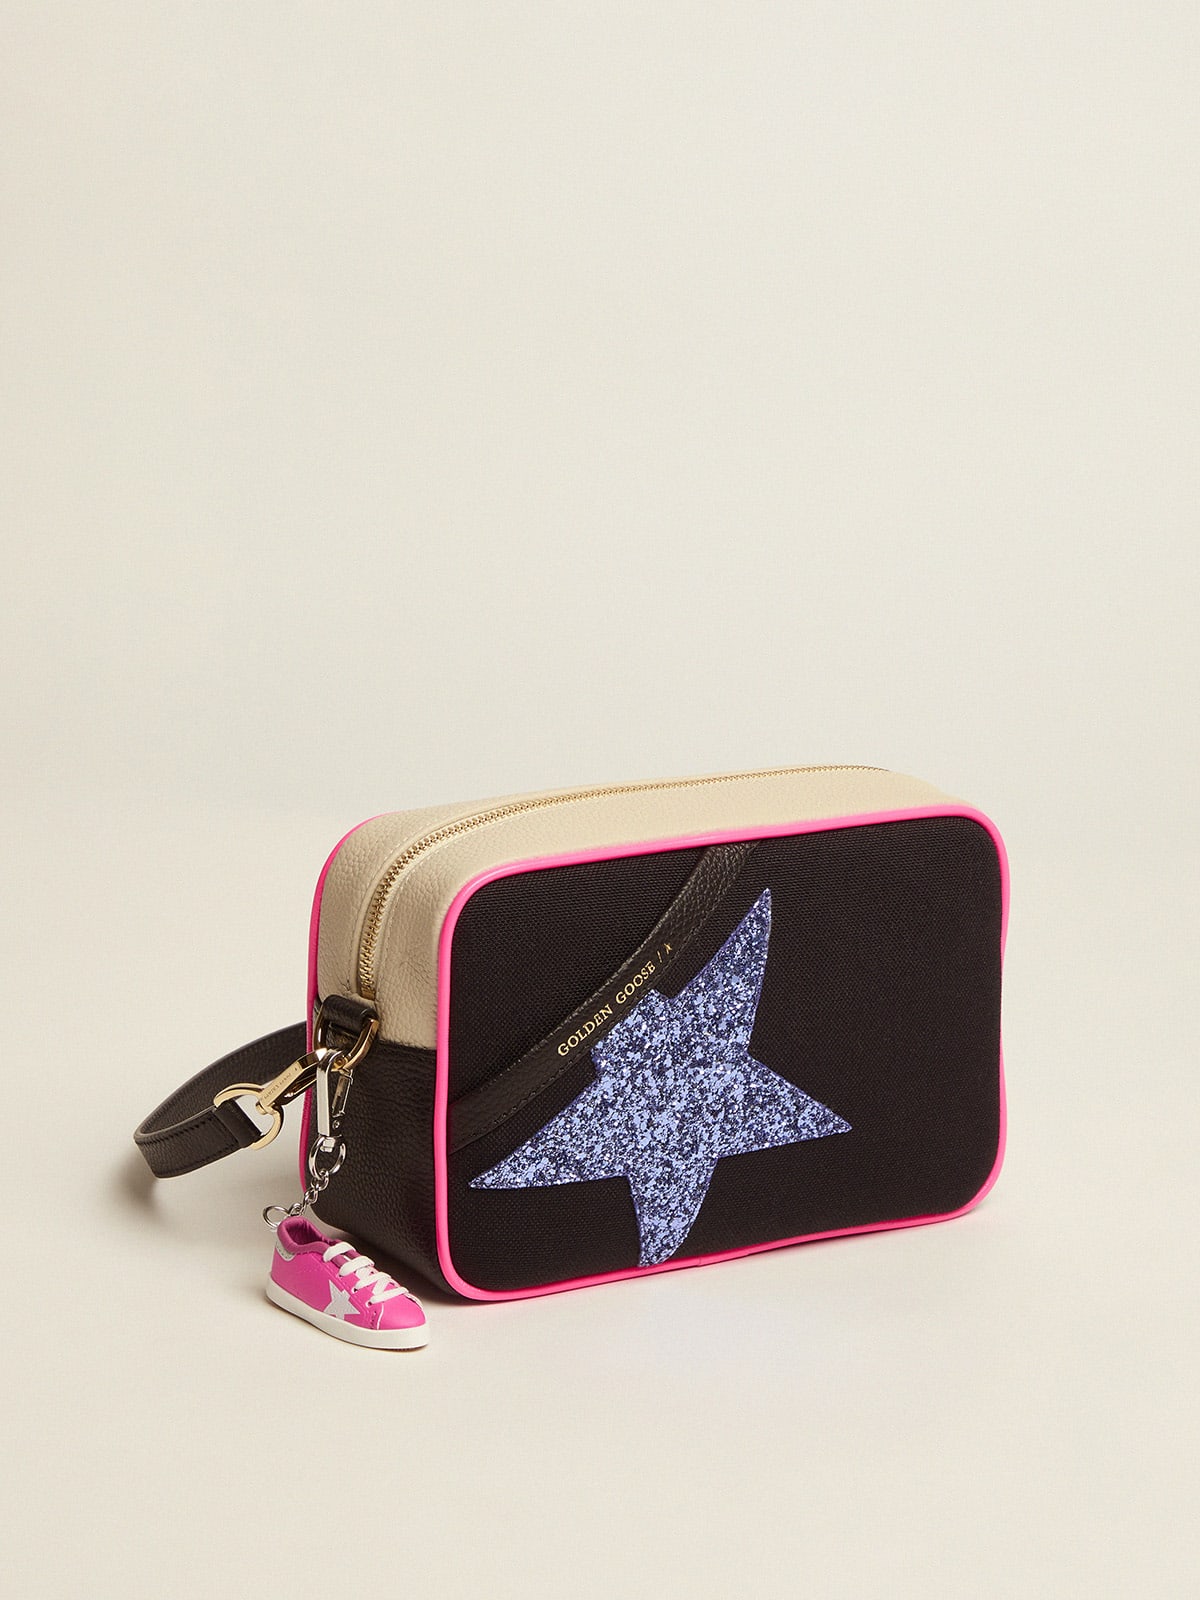 Golden Goose - Sac Star Bag en toile avec empiècements blanc cassé en cuir martelé et étoile à paillettes violettes in 